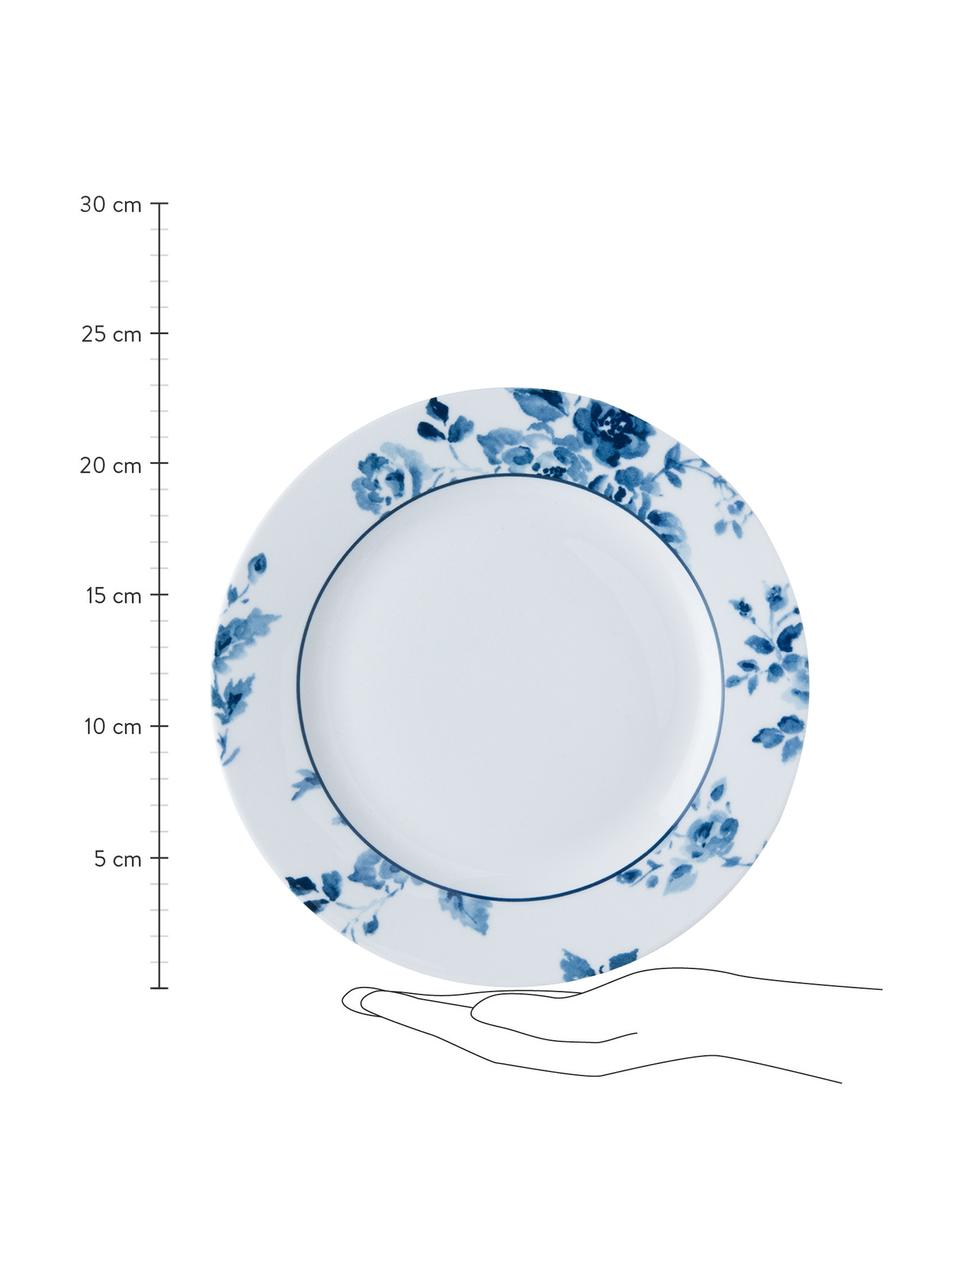 Ontbijtbord Candy rozen met blauw patroon, 4-delig, Beenderporselein, Wit, blauw, Ø 23 cm